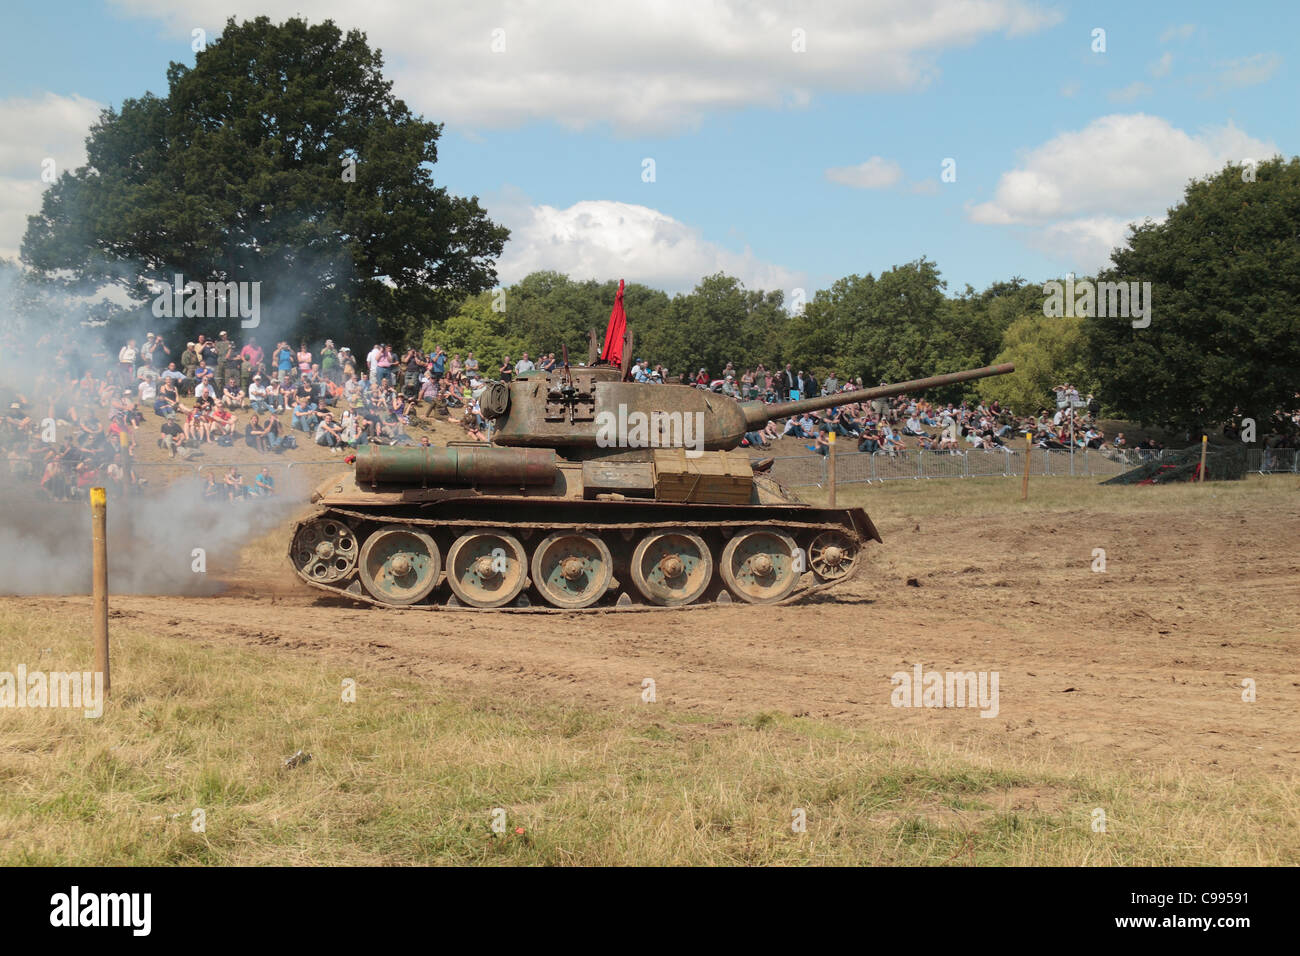 Ein sowjetischer T-34/85 Panzer auf dem Display an der 2011 Krieg & Frieden Schau Hop Farm, Paddock Wood, Kent, UK. Stockfoto